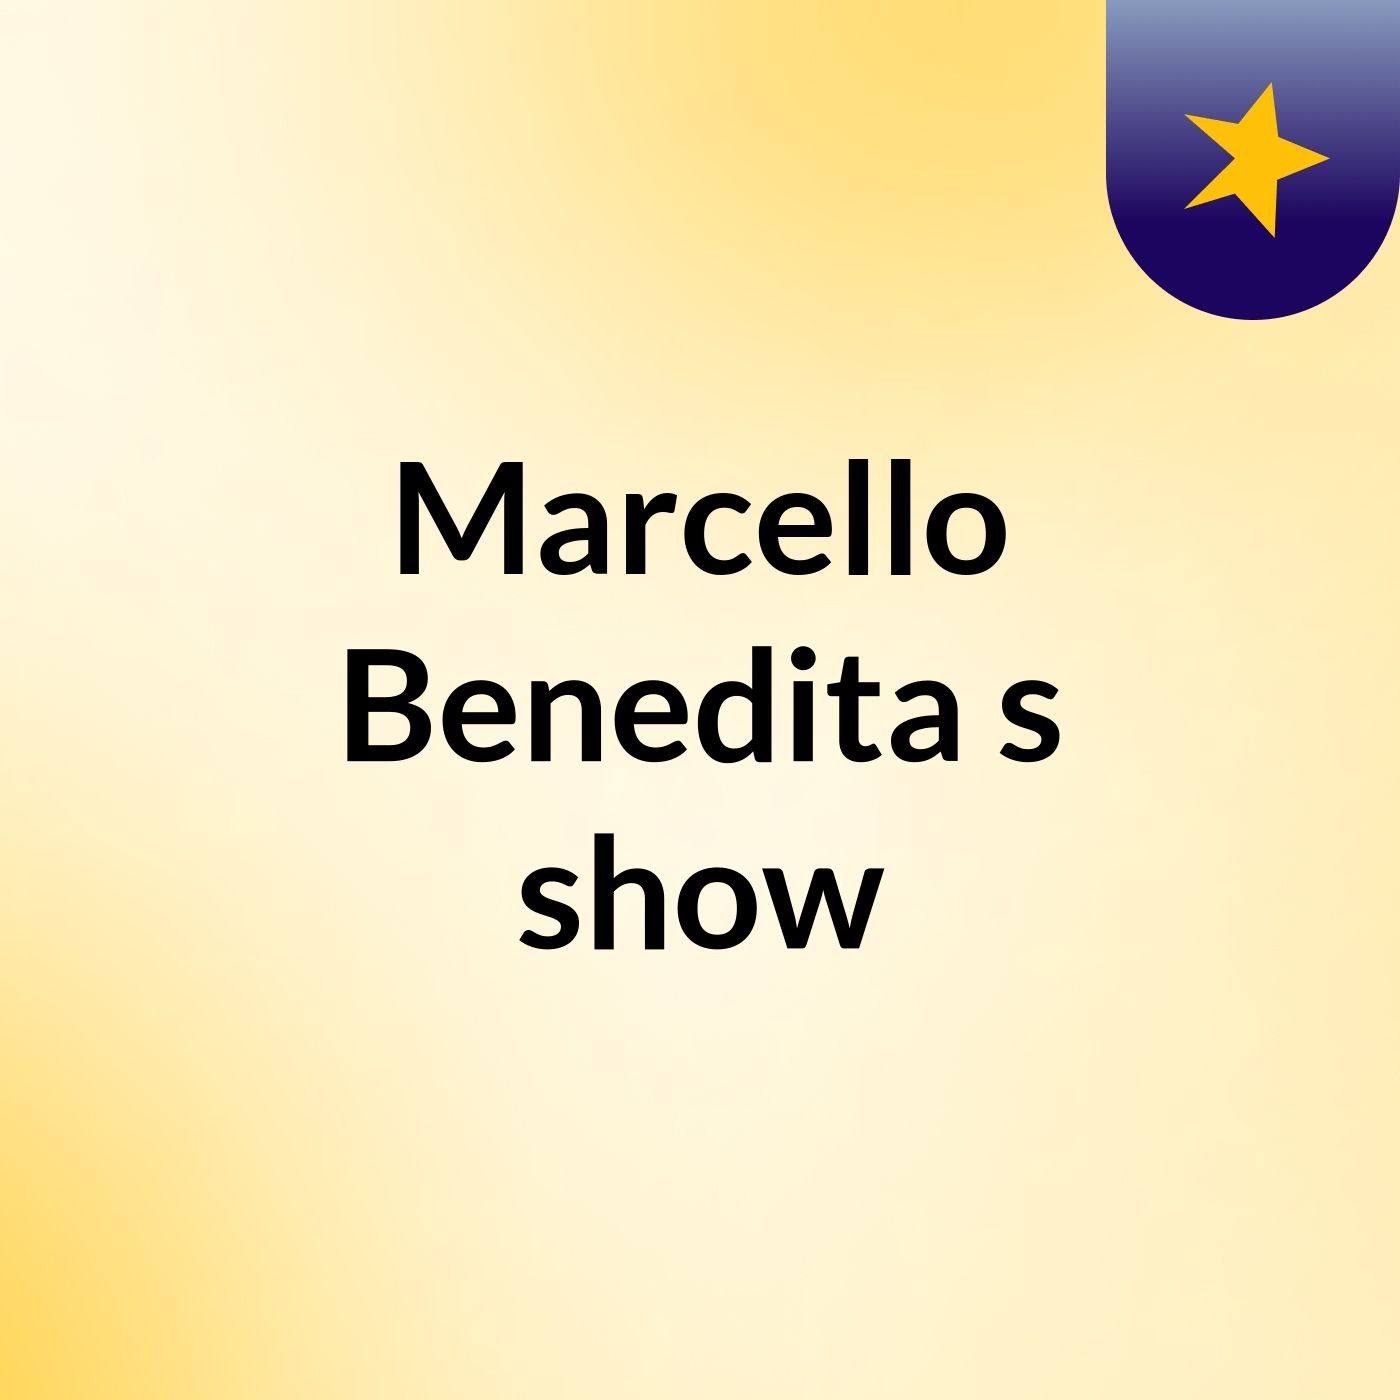 Marcello Benedita's show